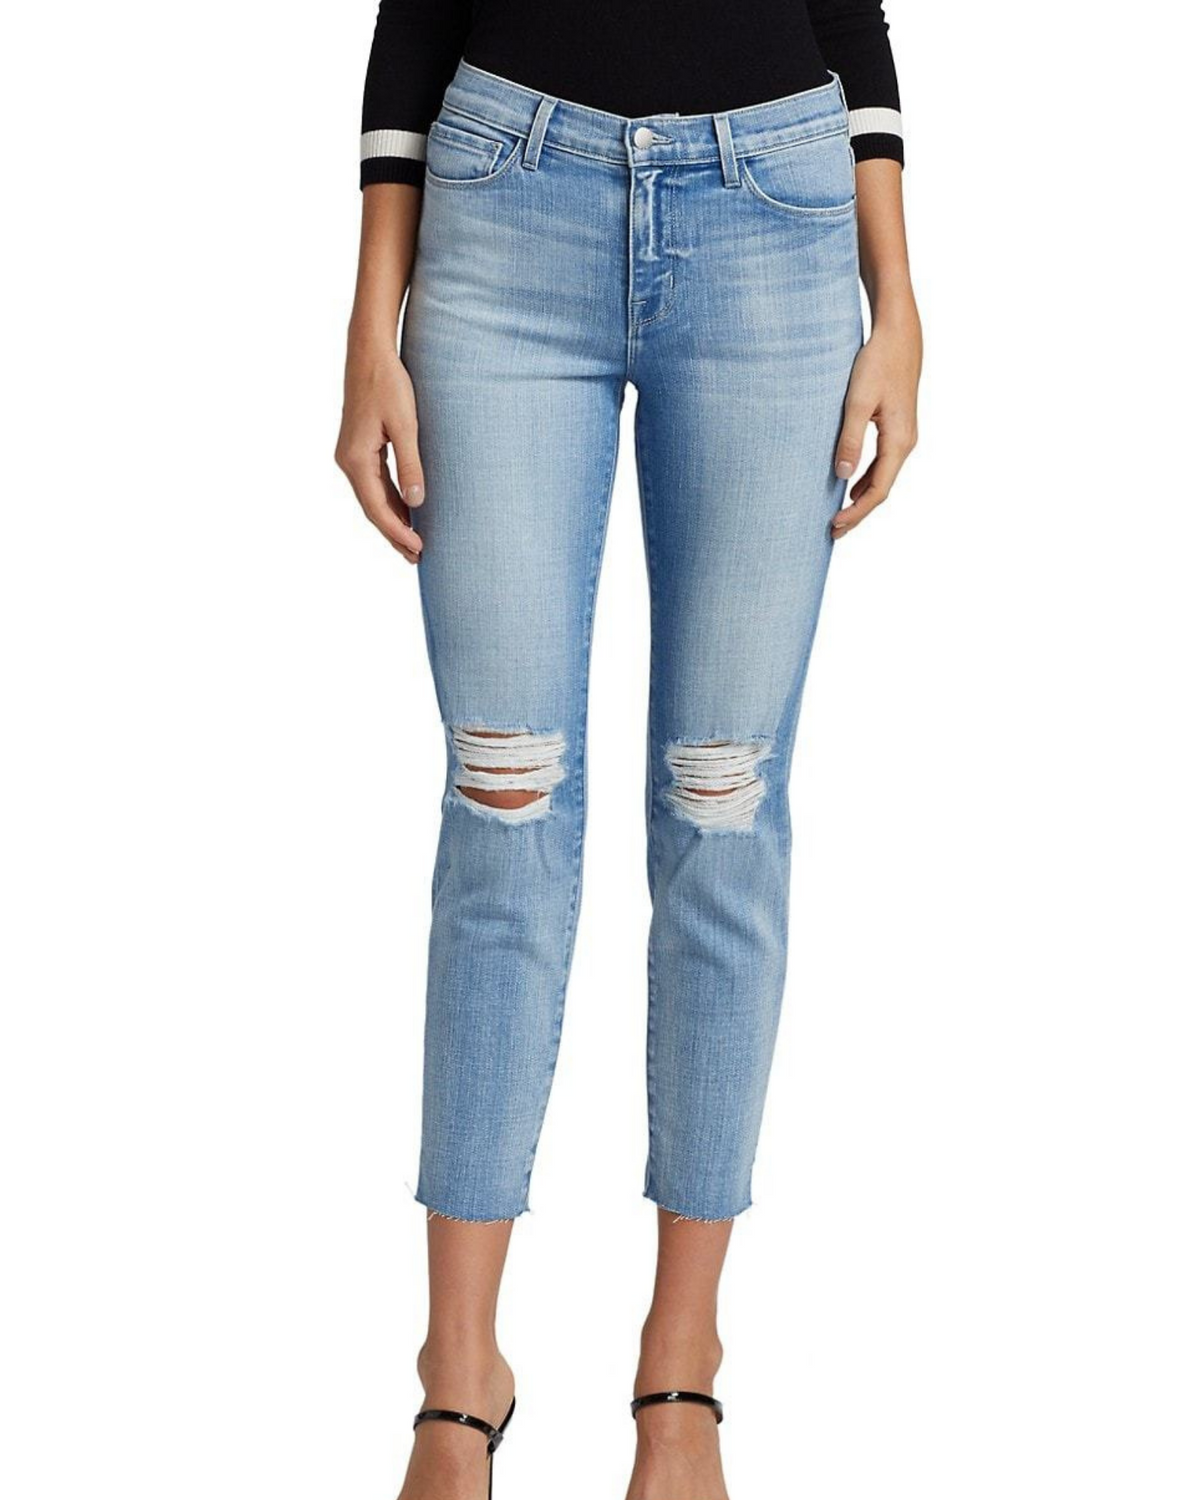 El Matador Slim-Fit Distressed Jeans - AshleyCole Boutique